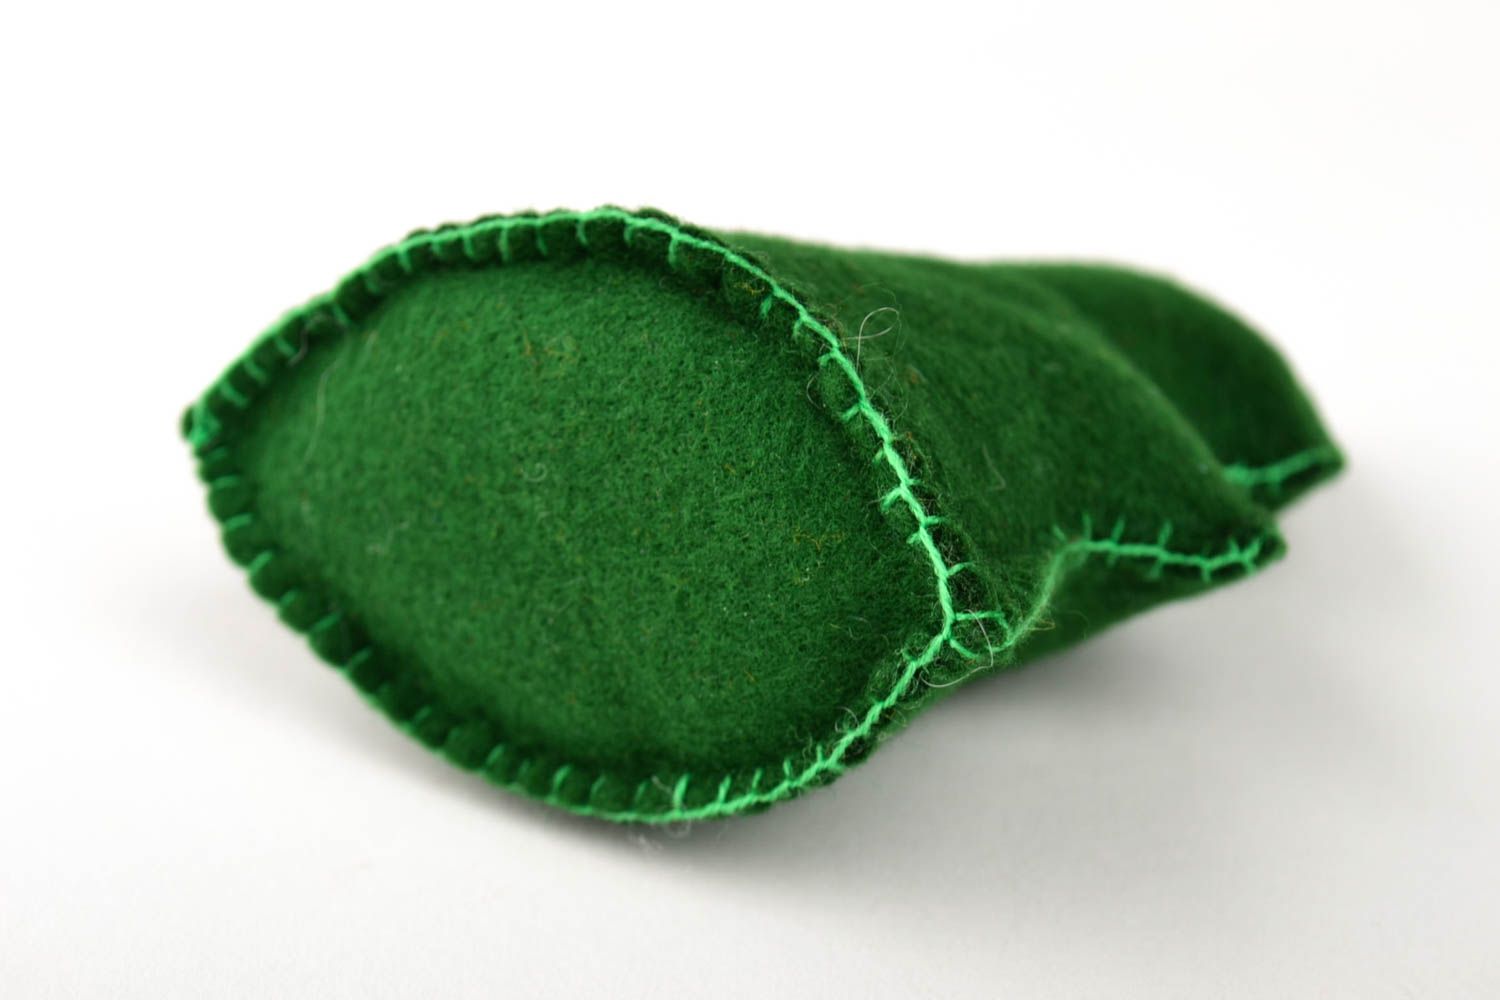 Игрушка ручной работы зеленая елка фетровая игрушка для детей декор для дома фото 3